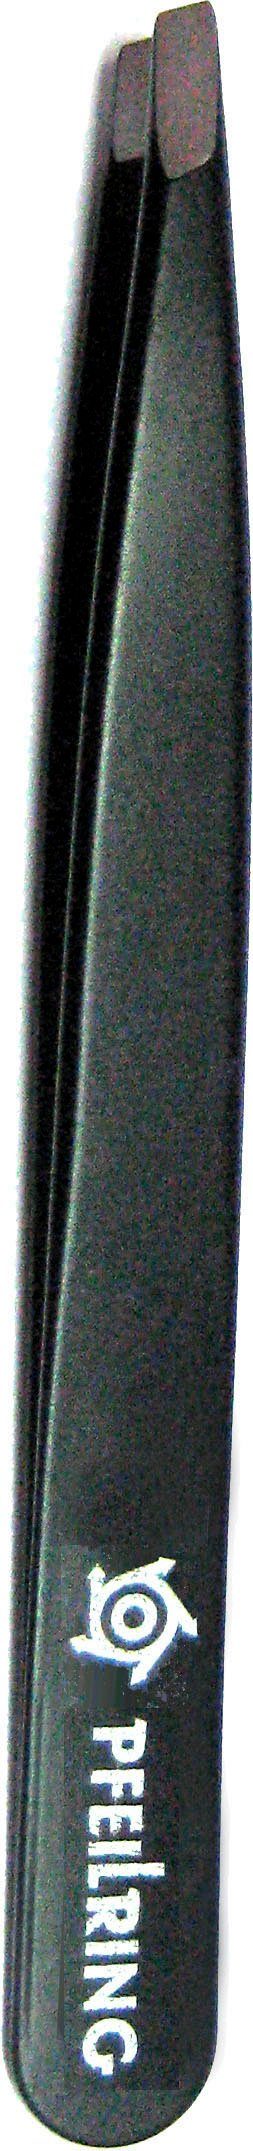 PFEILRING Pinzette, schwarz rostfrei 9,7cm